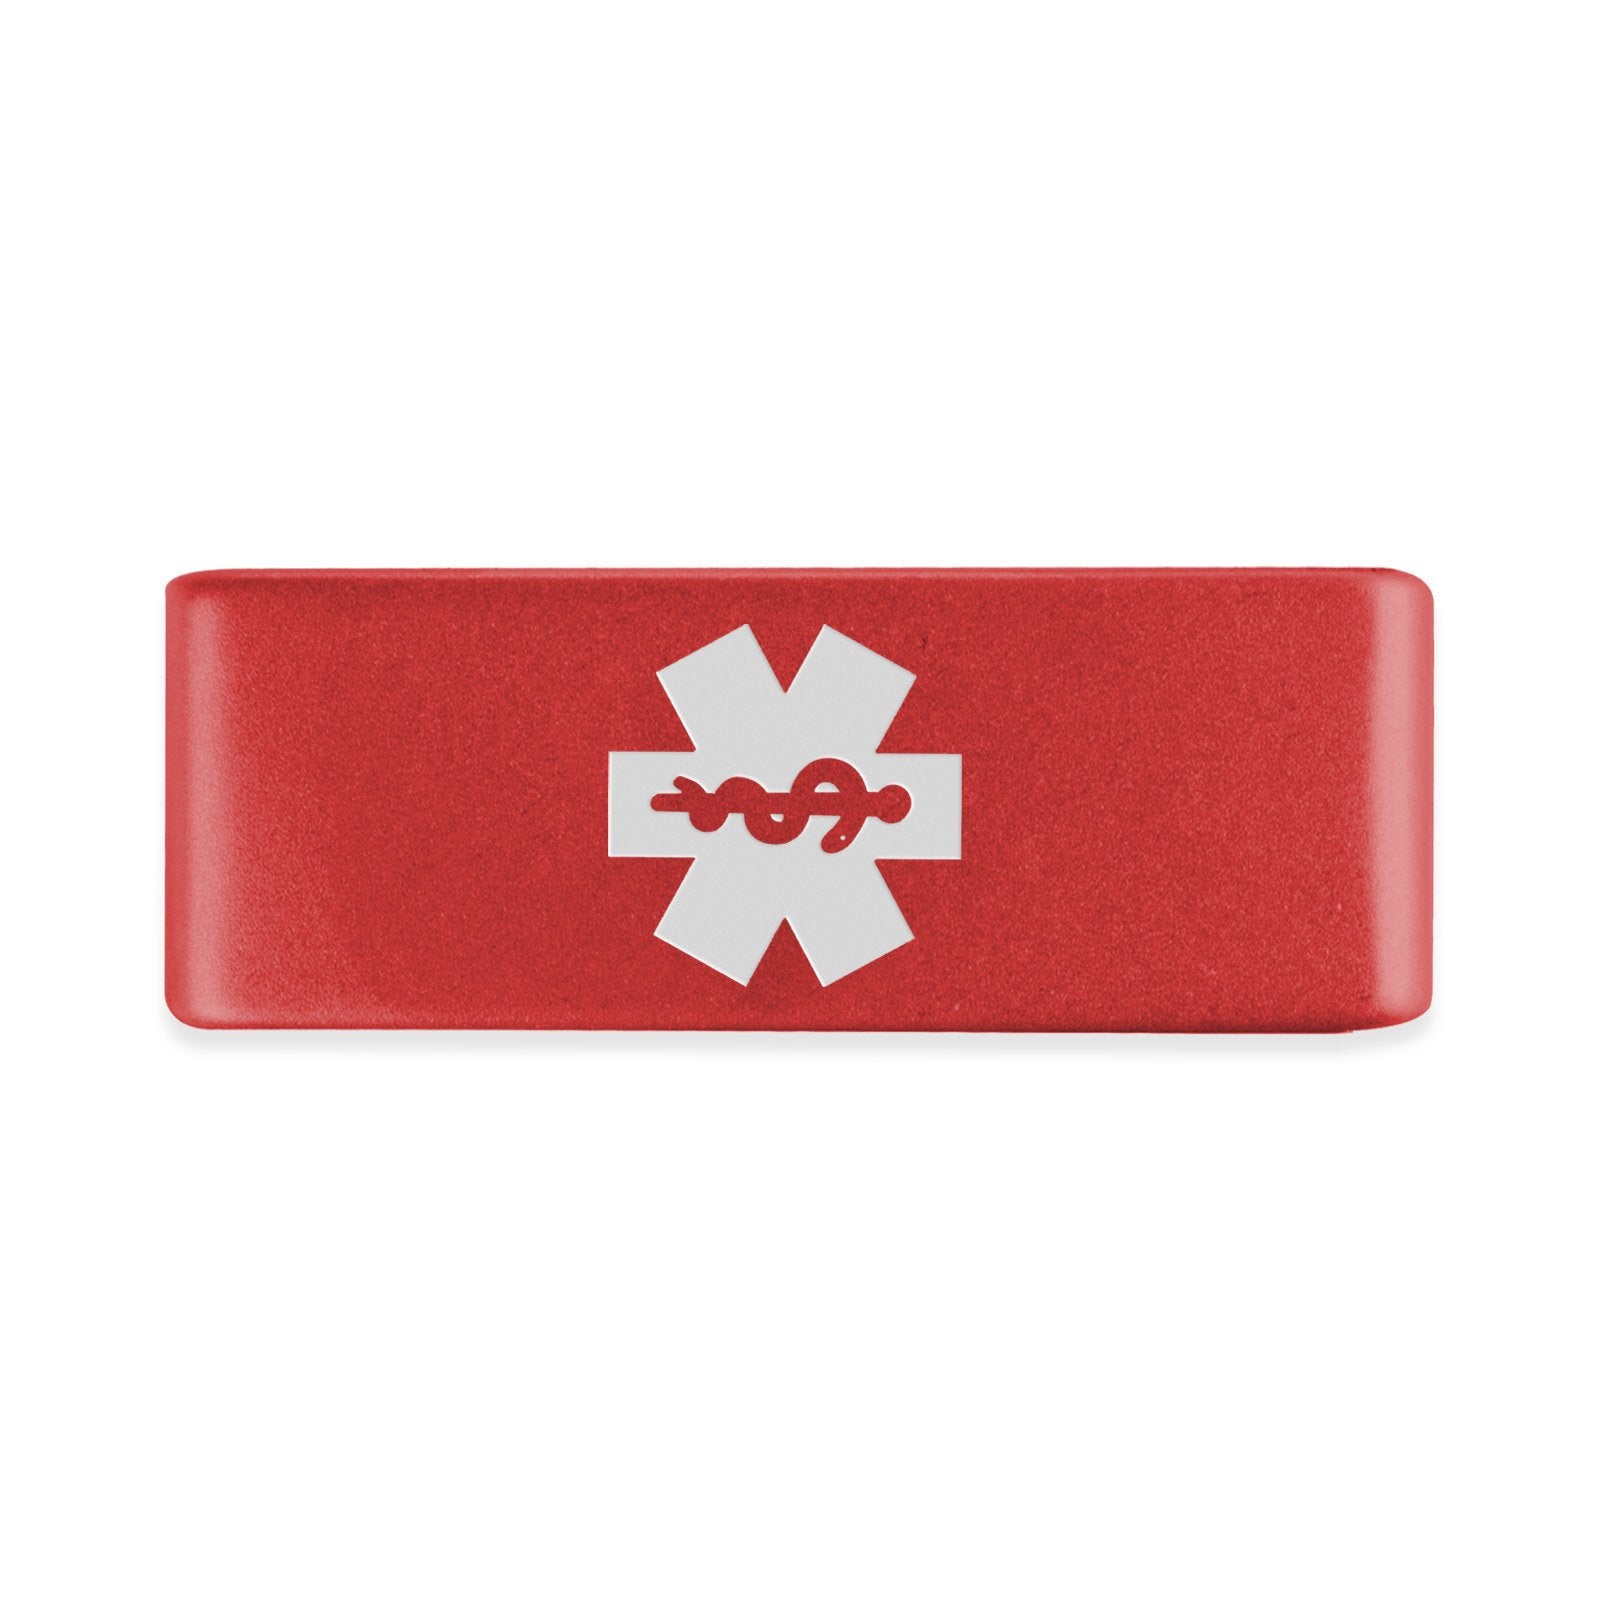 Medical Alert Badge Badge 13mm - ROAD iD